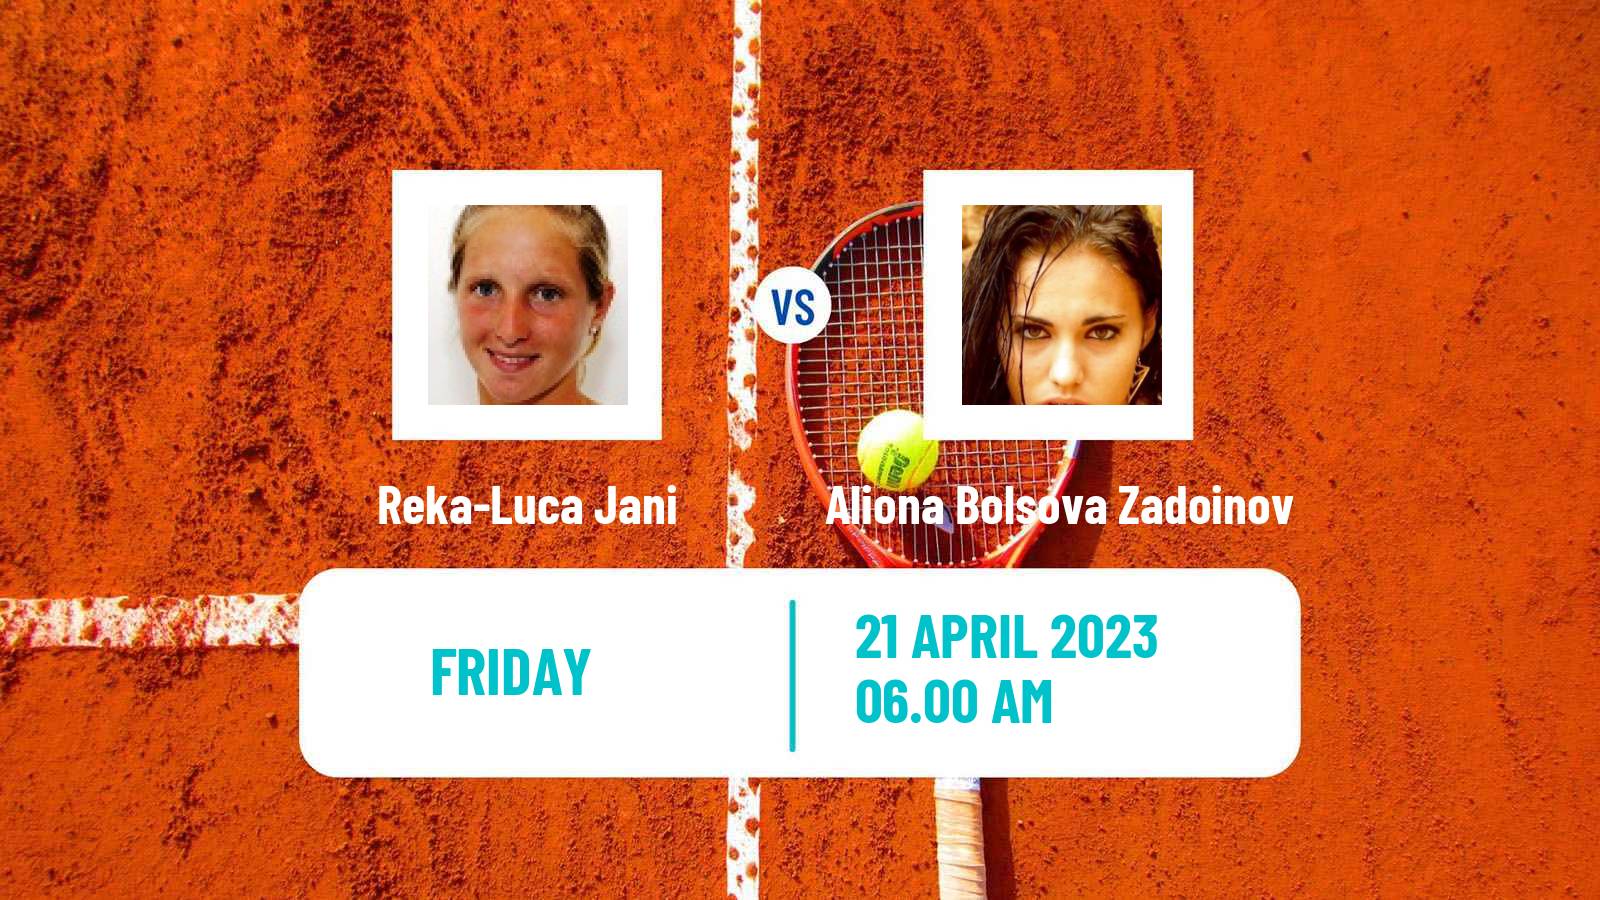 Tennis ITF Tournaments Reka-Luca Jani - Aliona Bolsova Zadoinov